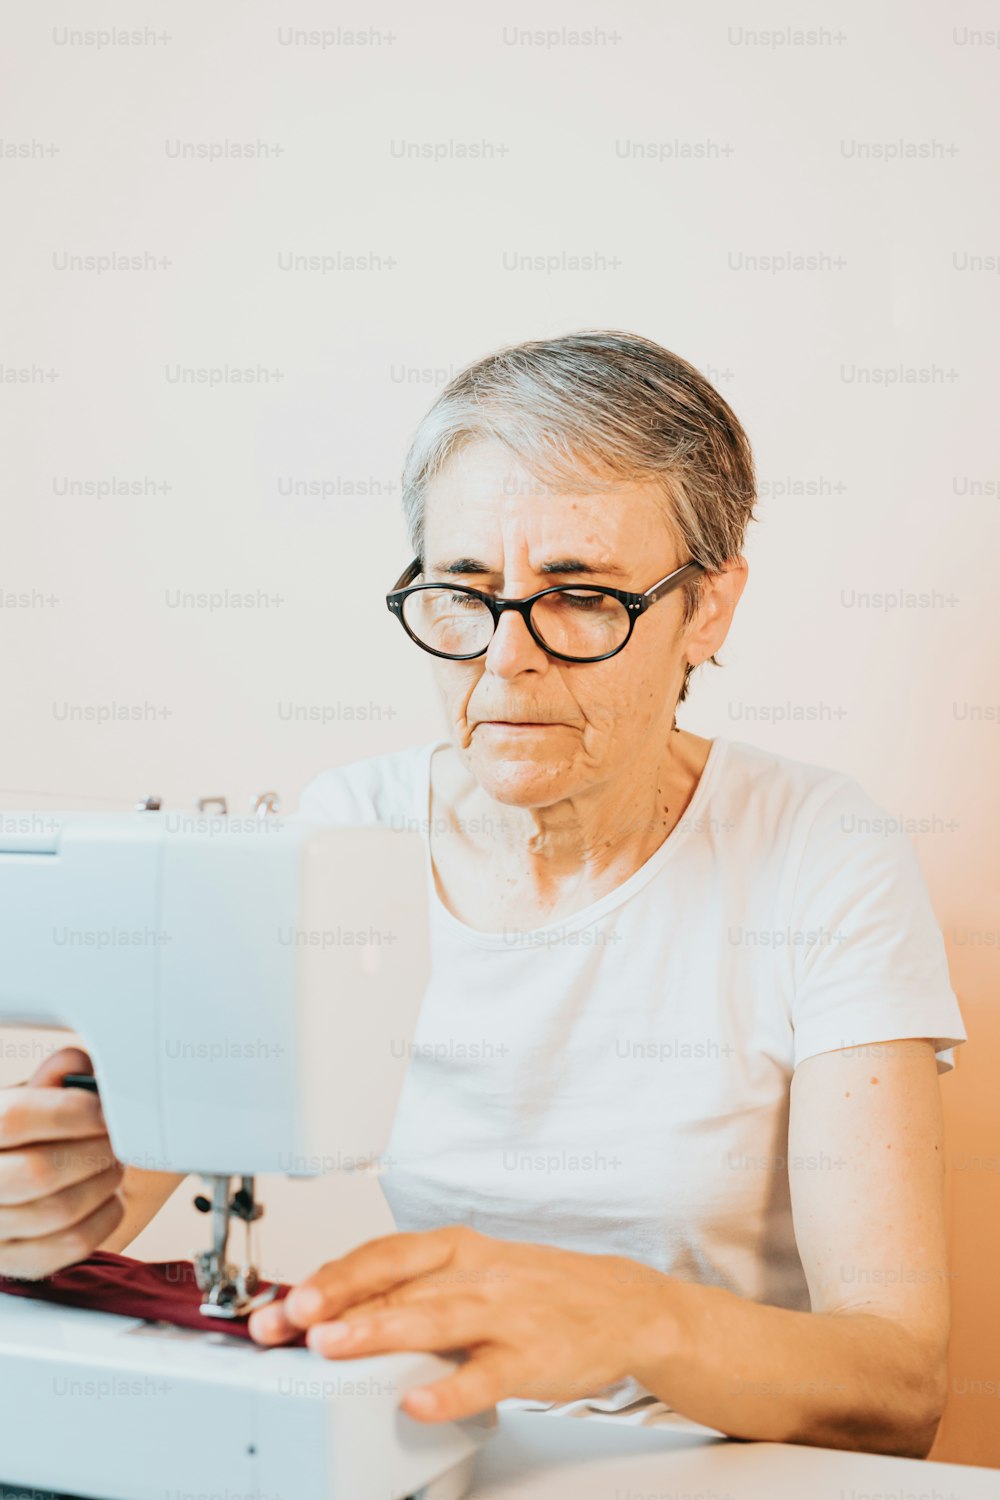 Una mujer mayor está usando una máquina de coser